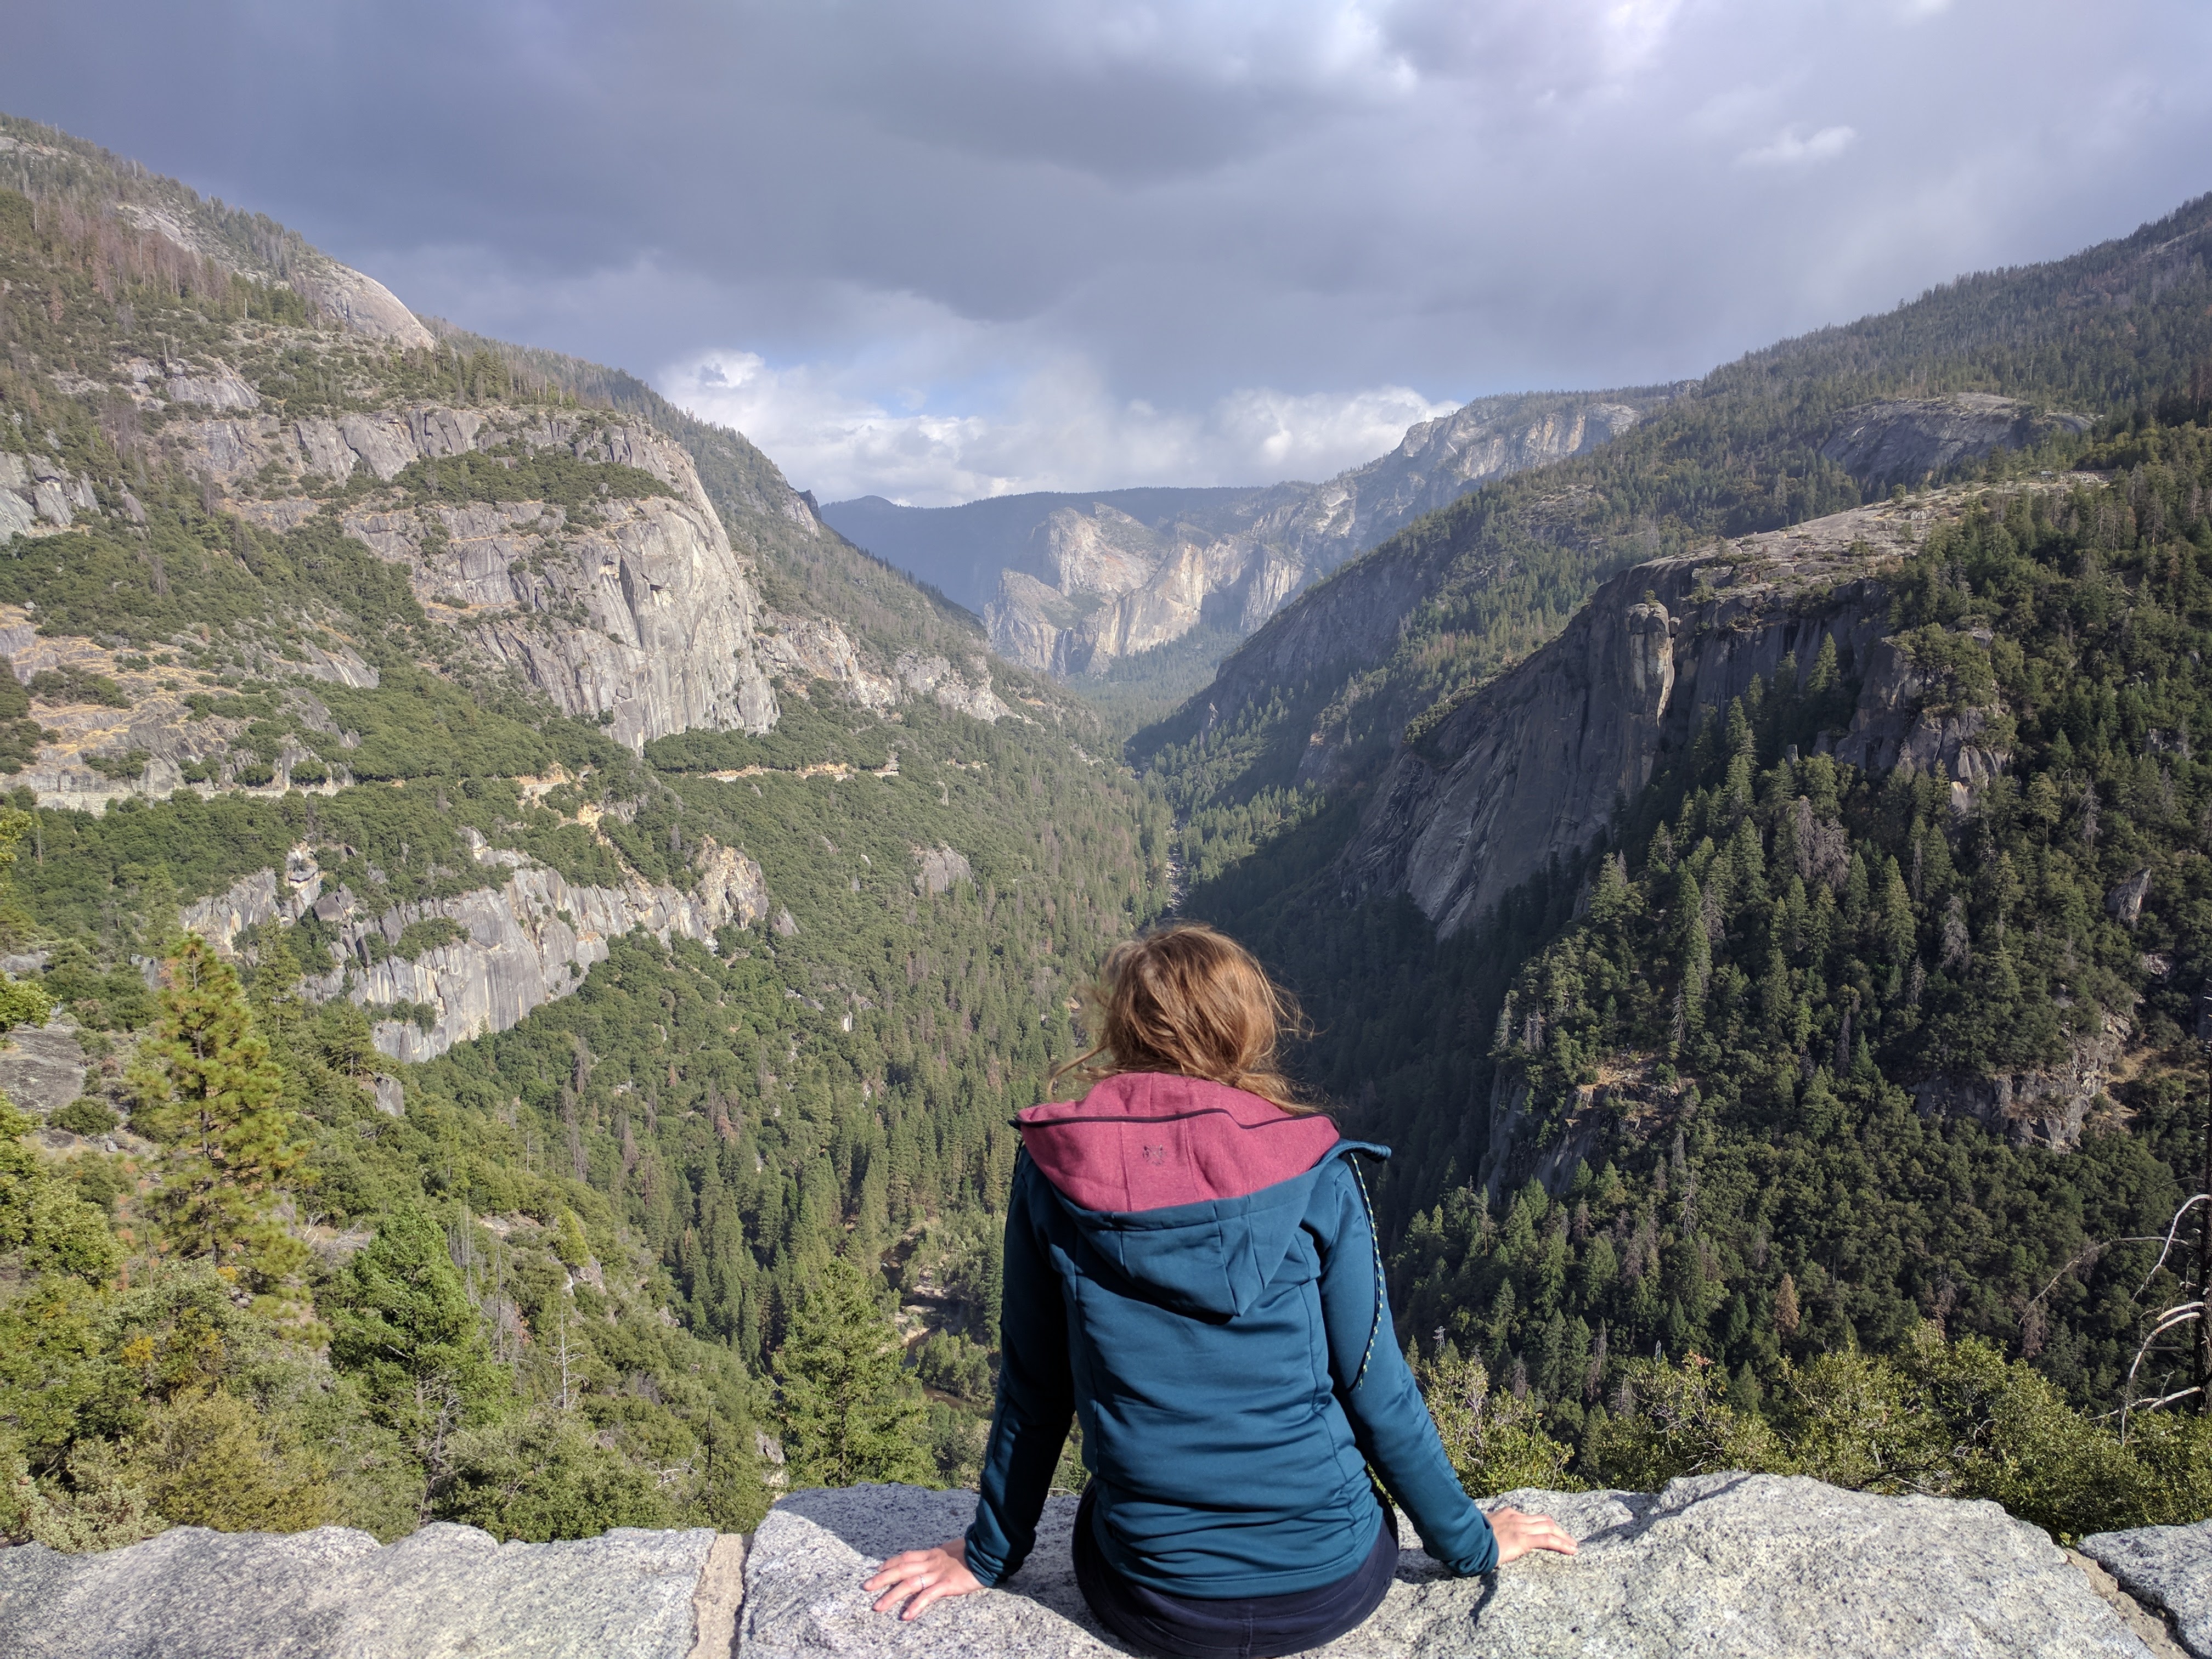 De mooie uitzichten in Yosemite zijn eindeloos (en de foto momentjes dus ook)!